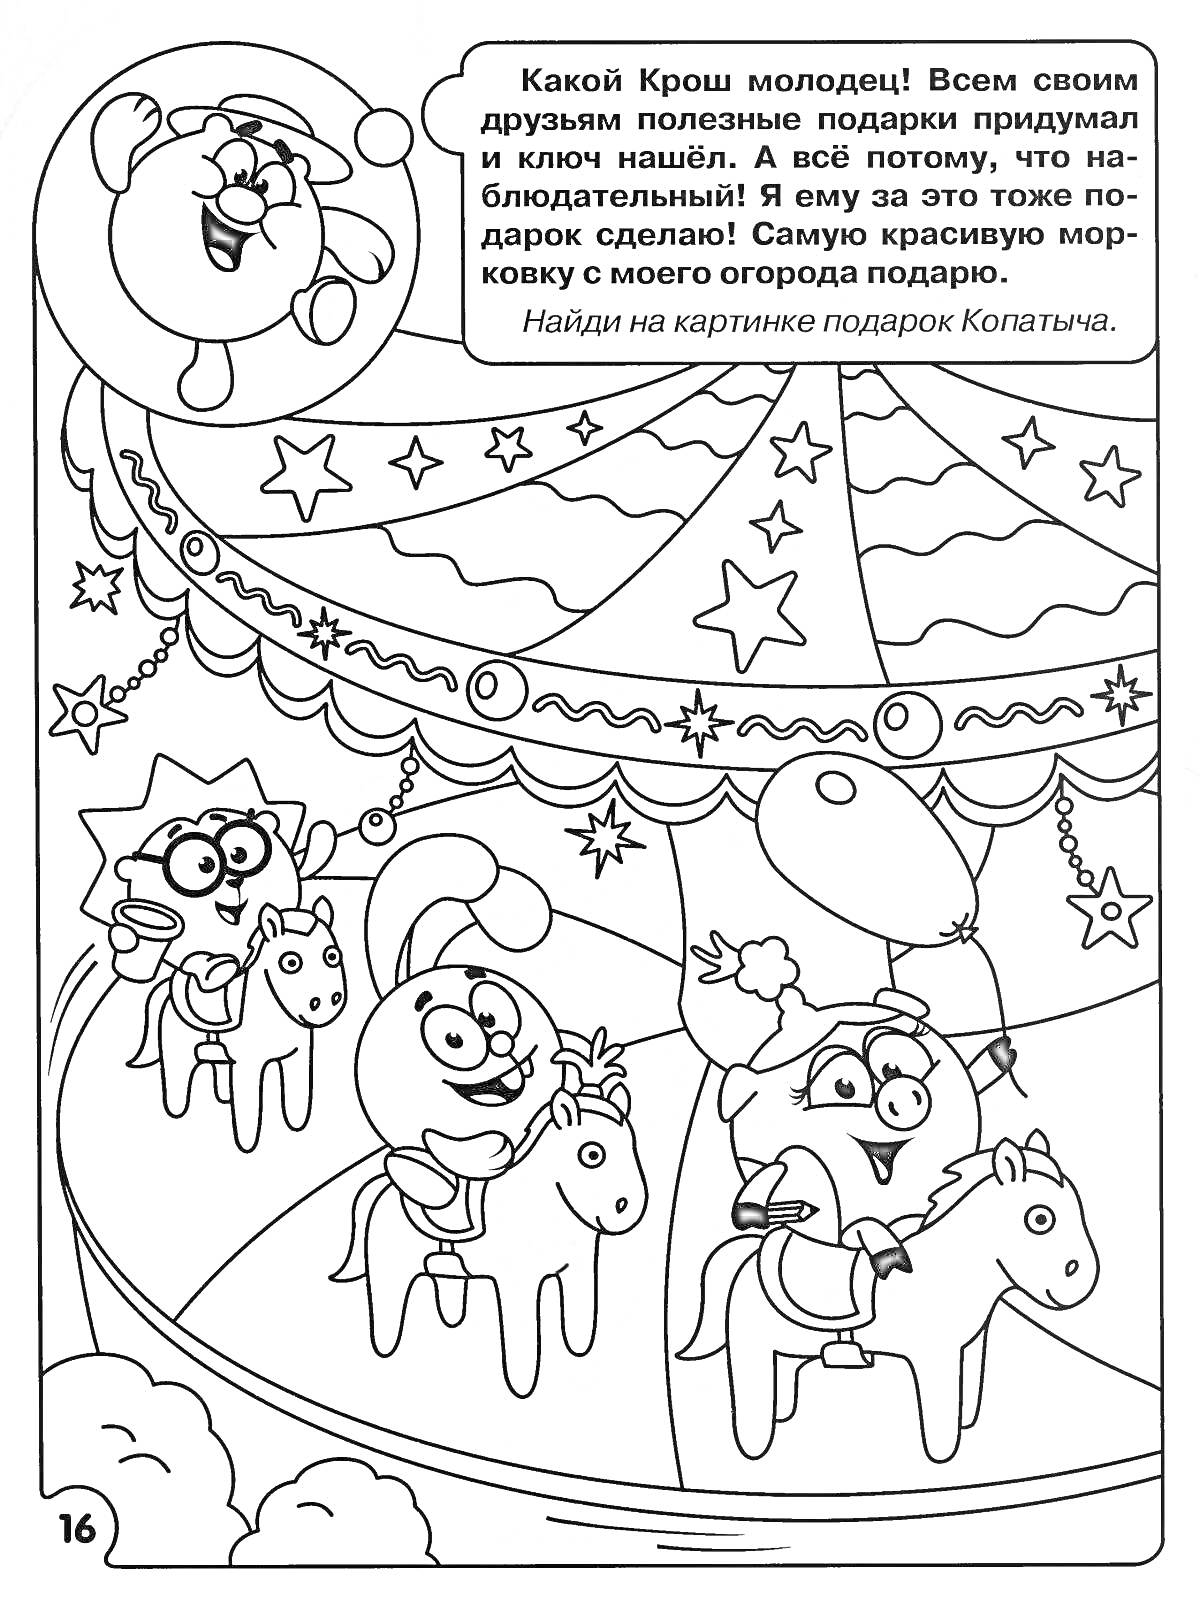 Раскраска Копатыч на карусели с друзьями. Крош, Ежик и Копатыч на лошадках, звездочки и гирлянды сахарные, воздушный шар.